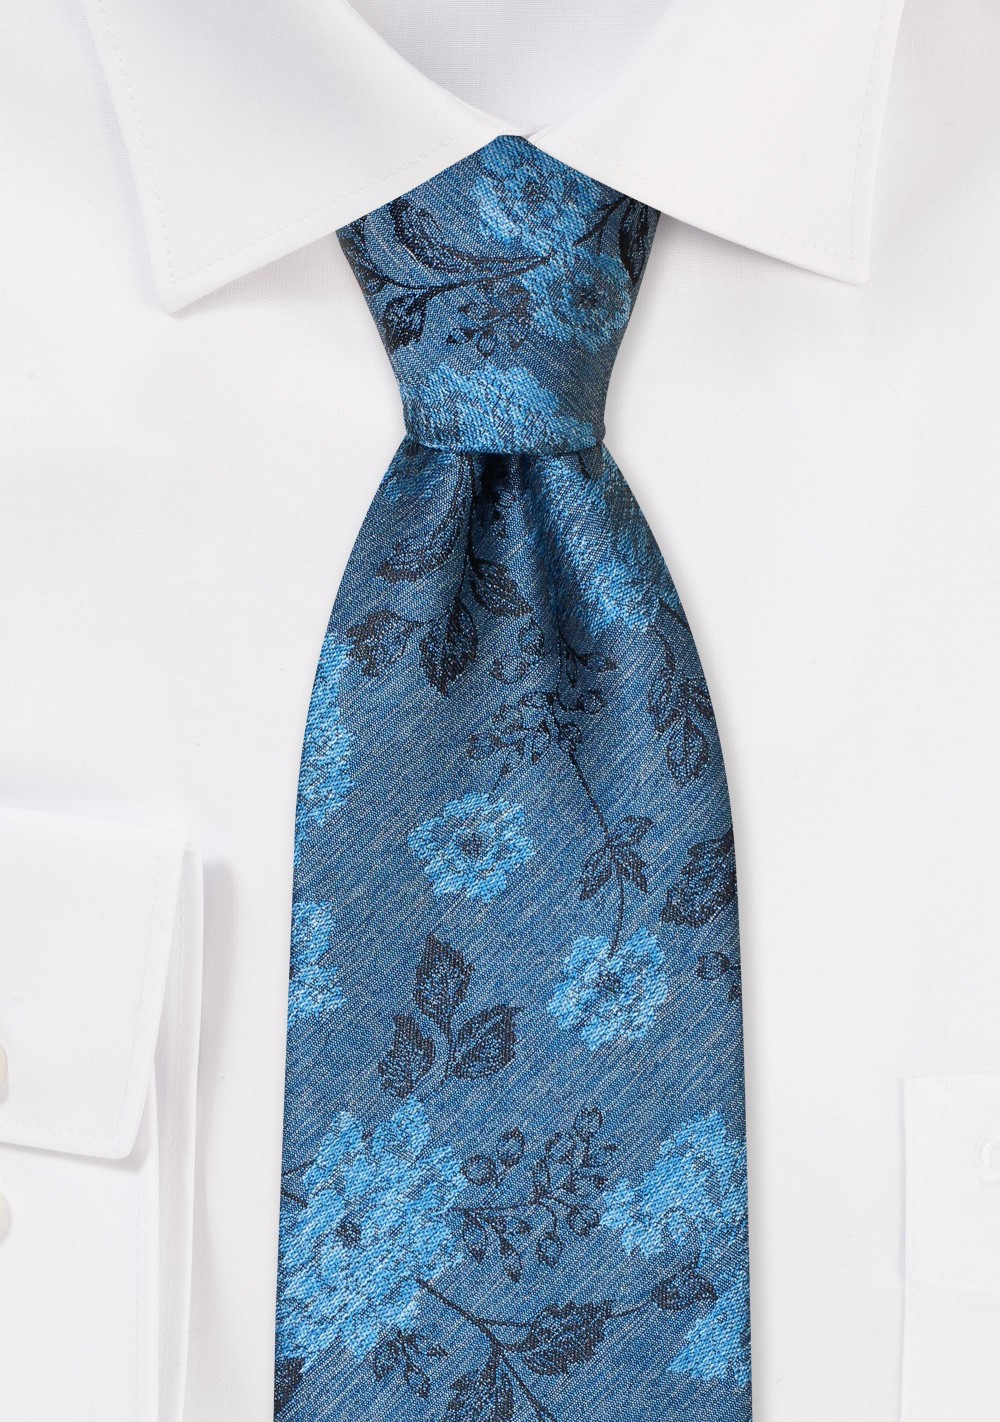 Retro Floral Tie in Ink Blue